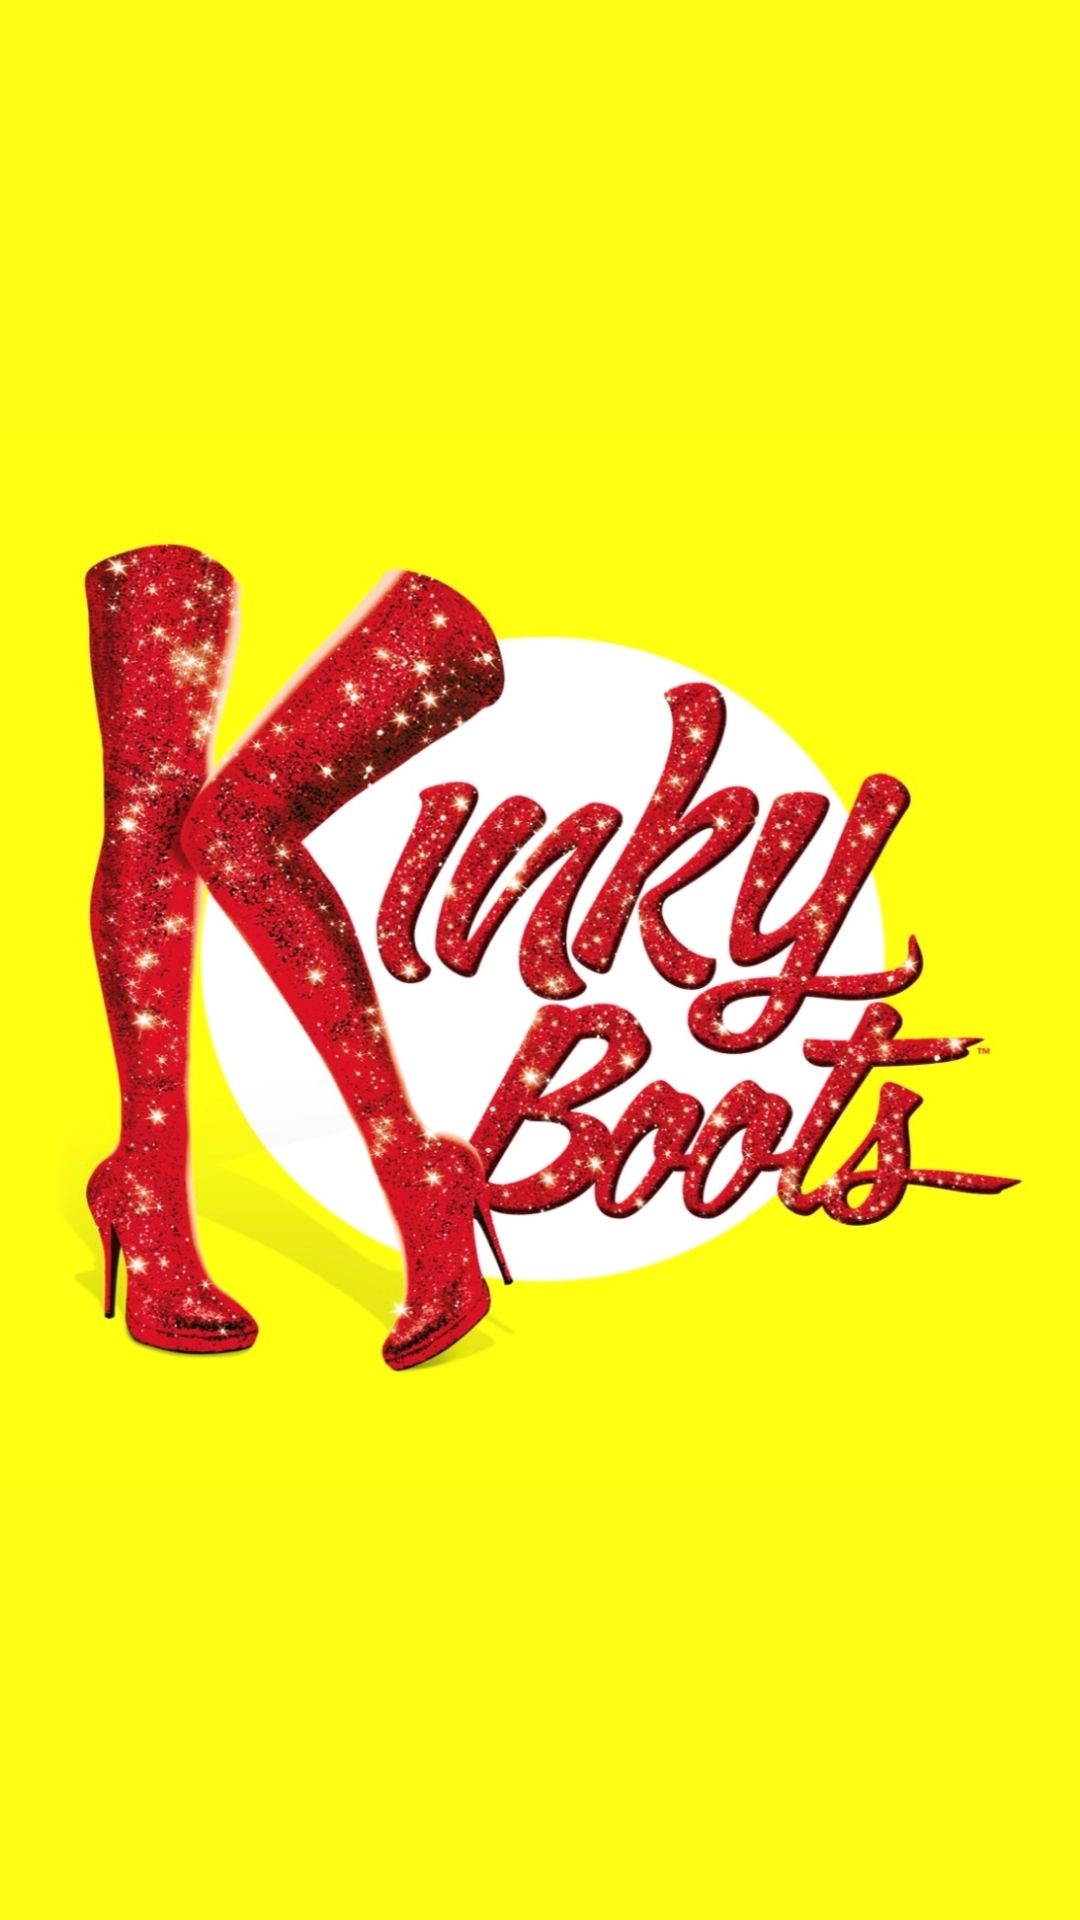 Kinky boots Spektrix